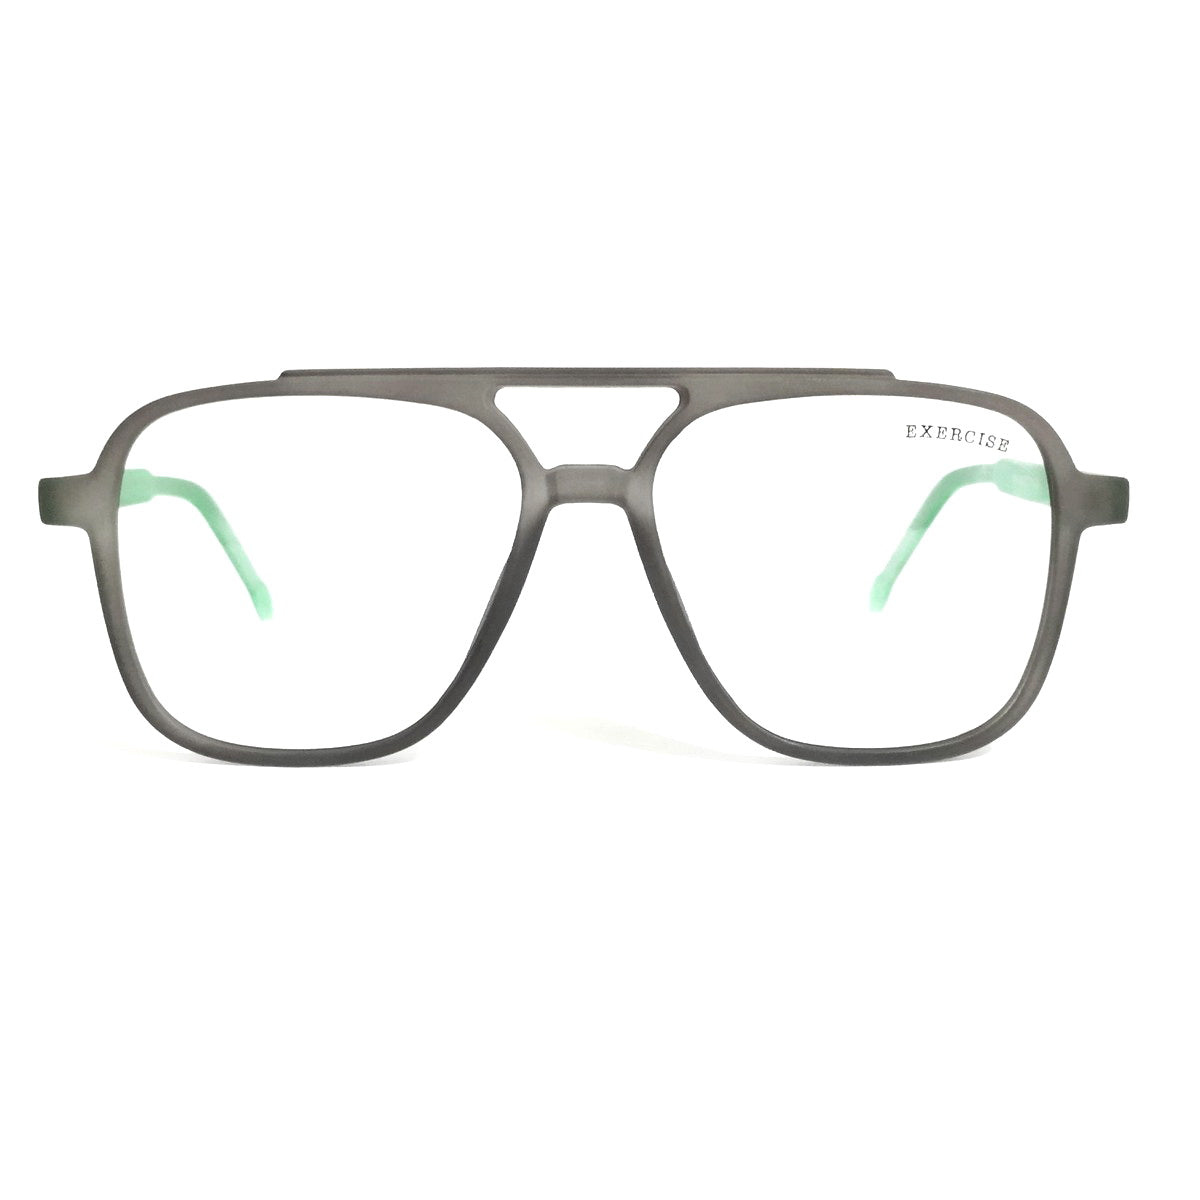 Pilot Shape Glasses for Men and Women Eyeglasses